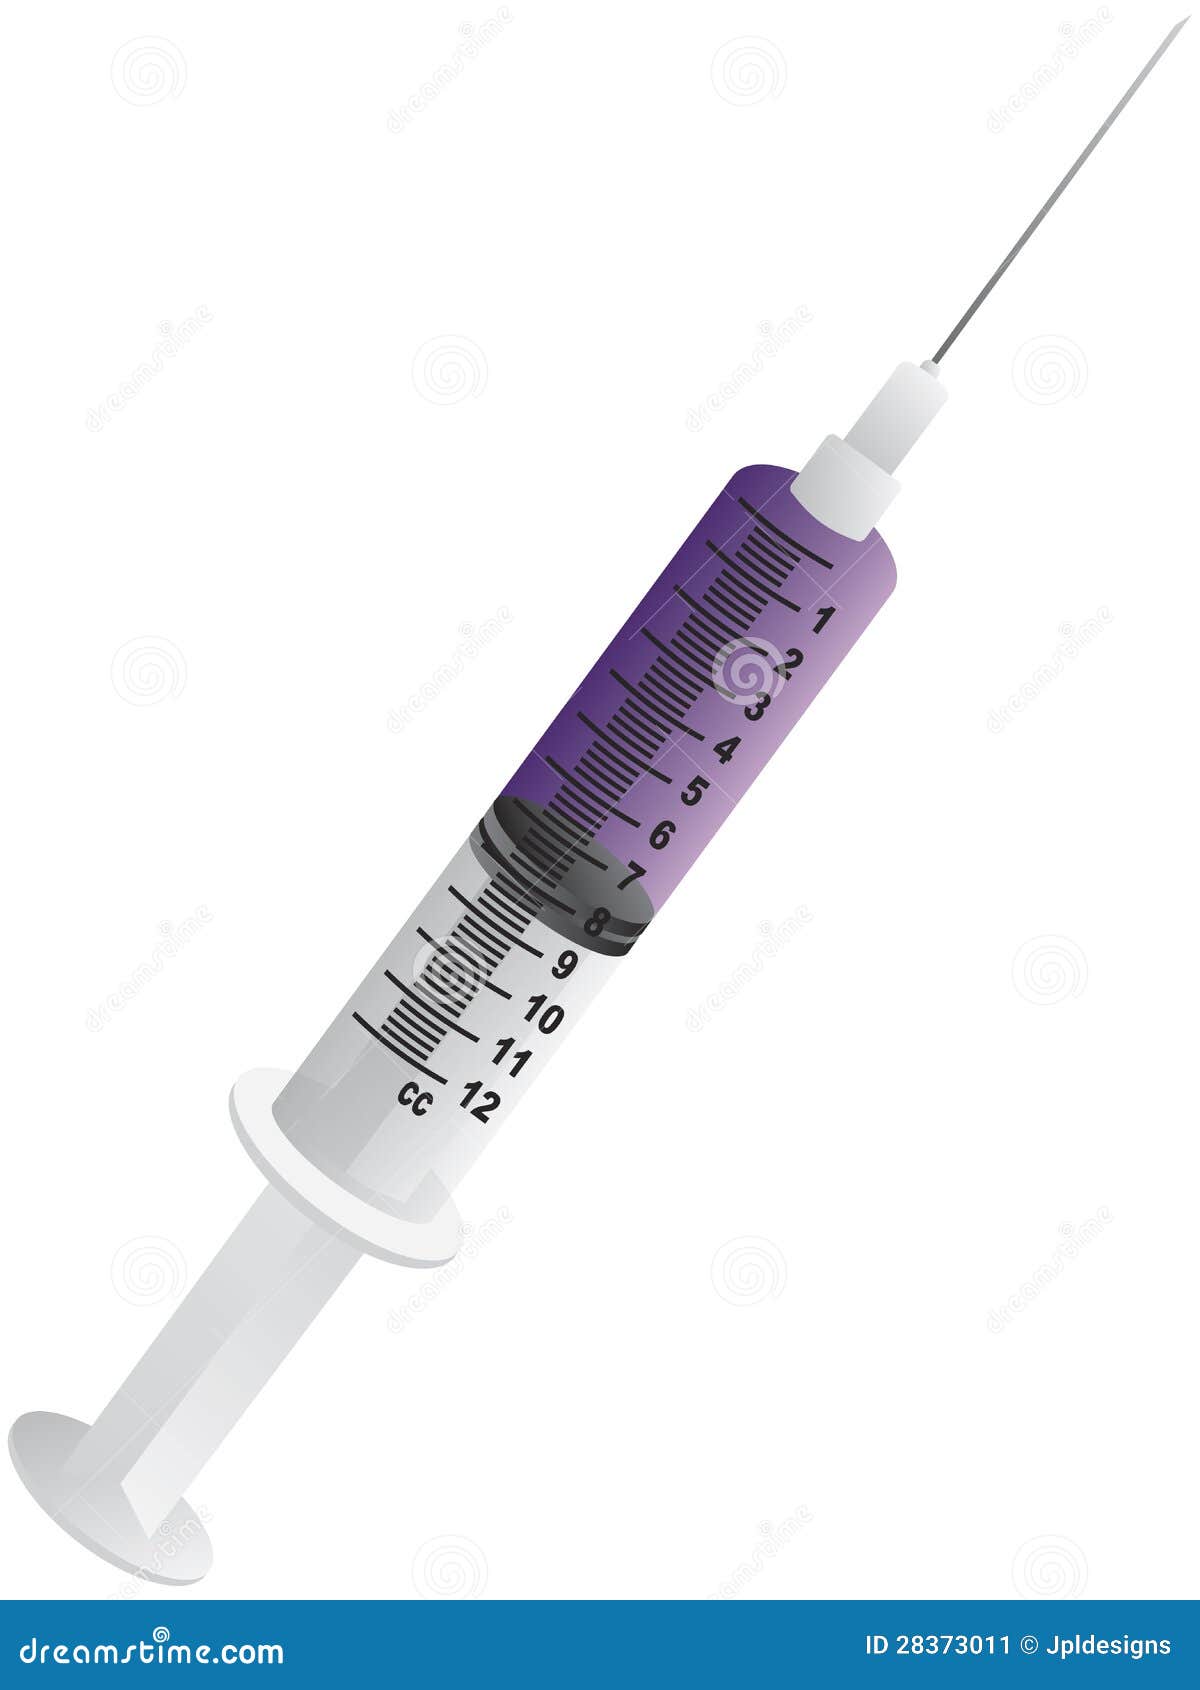 hypodermic syringe needle 